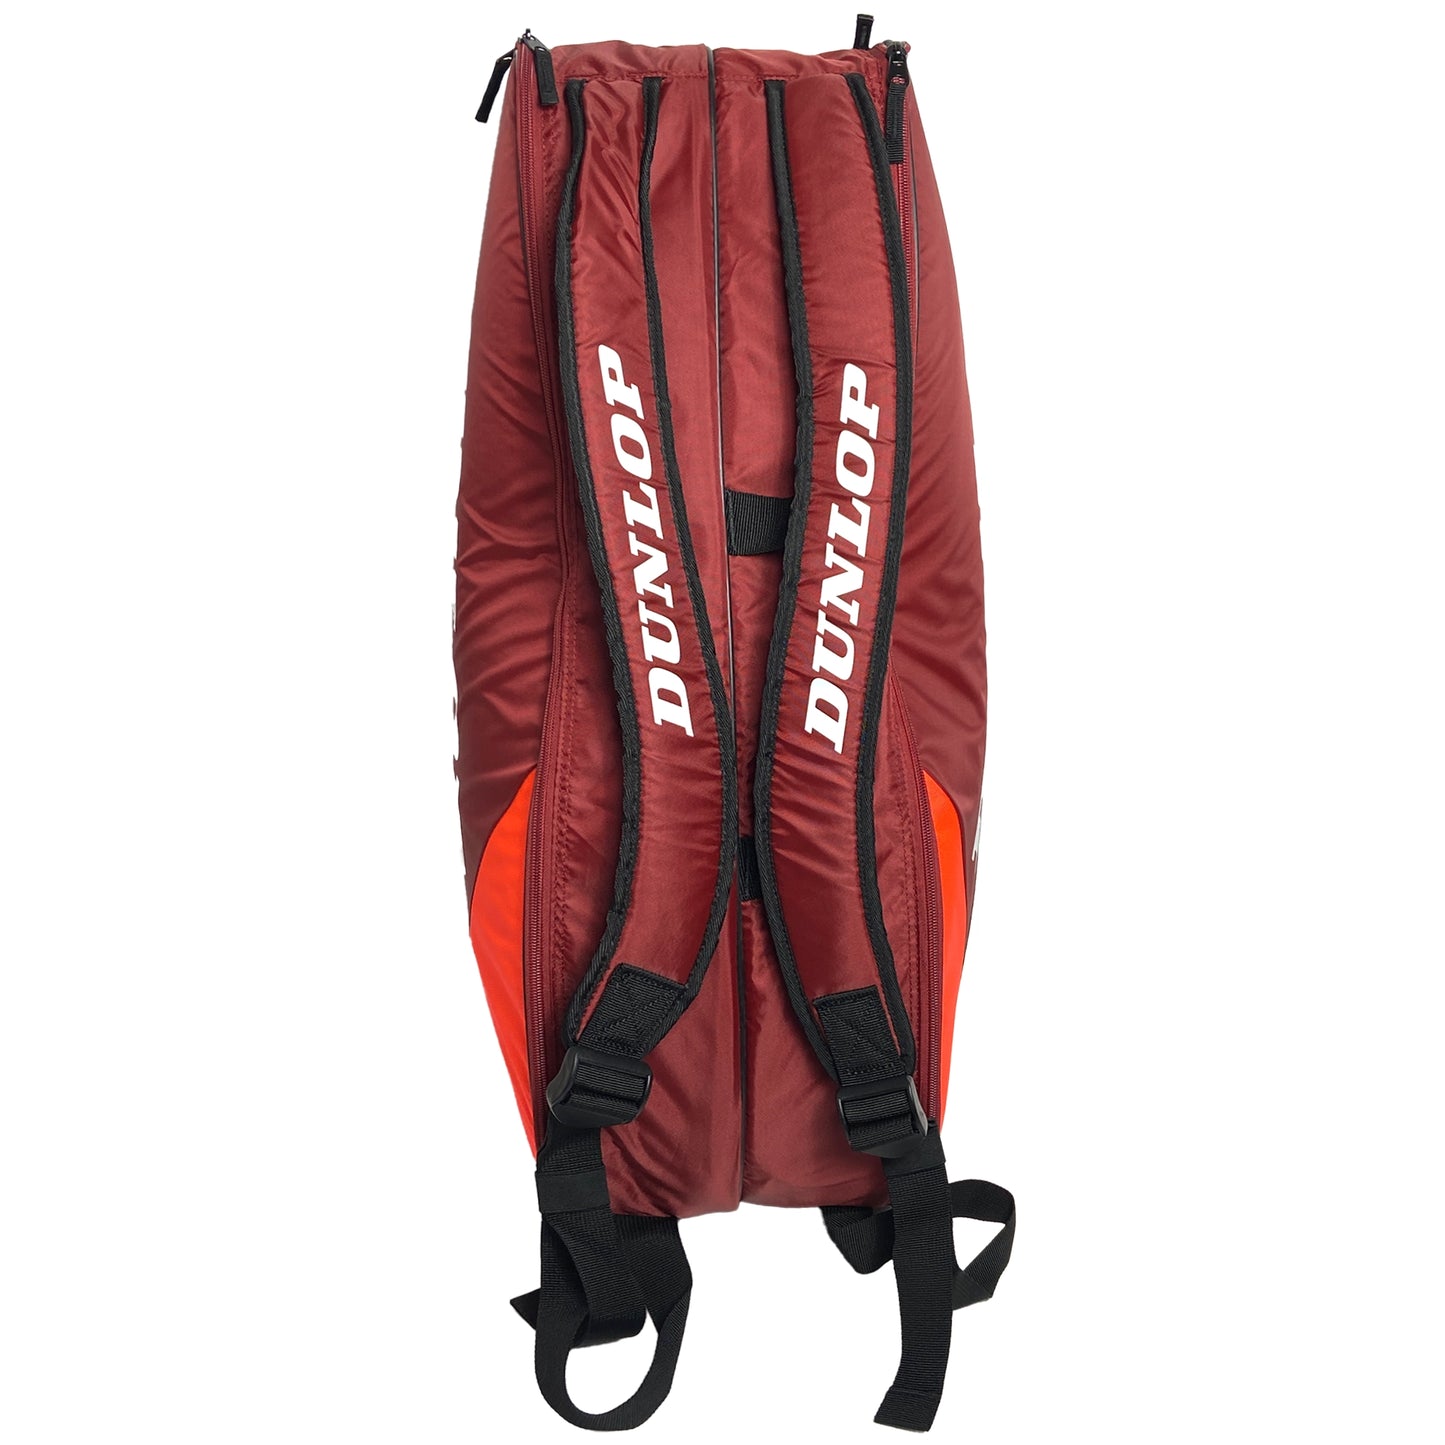 Dunlop CX Club 6R Bag Black/Red